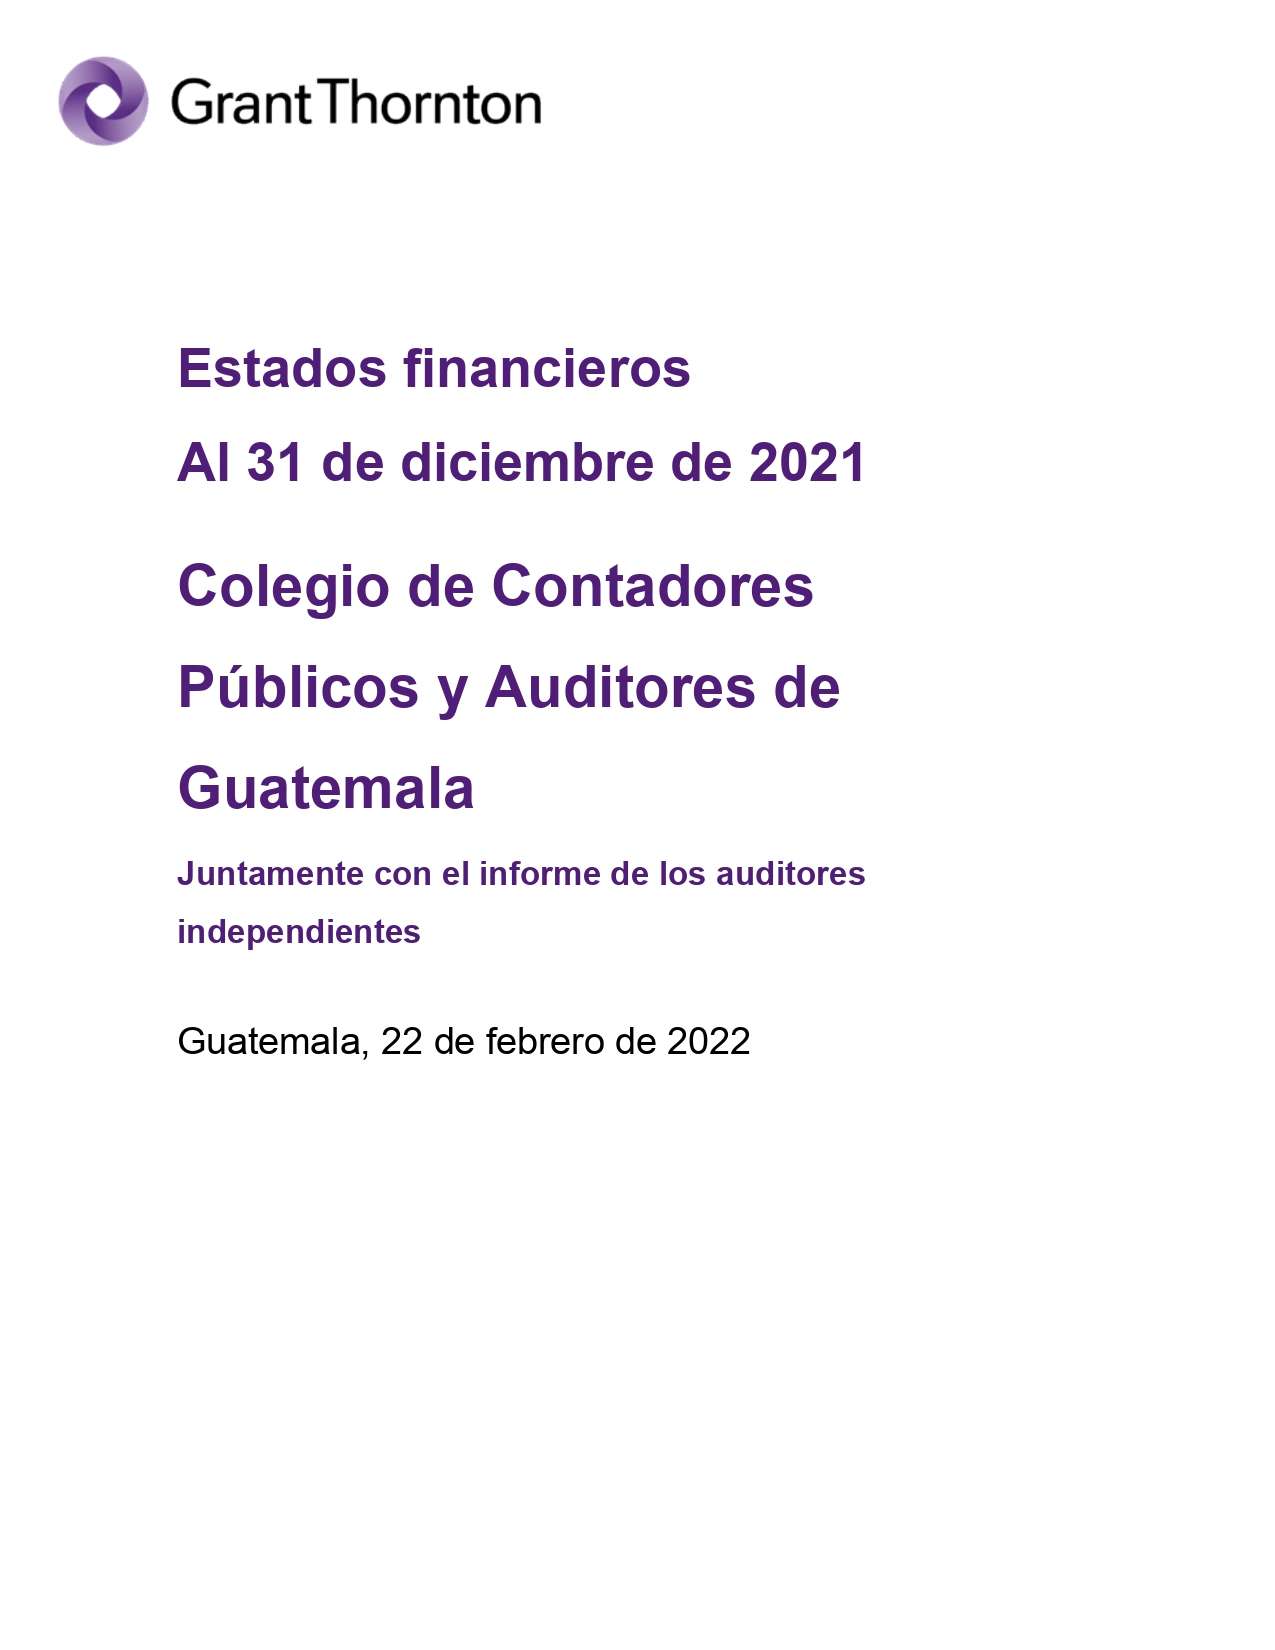 Estados Financieros Auditados del 01 de enero al 31 de diciembre de 2021